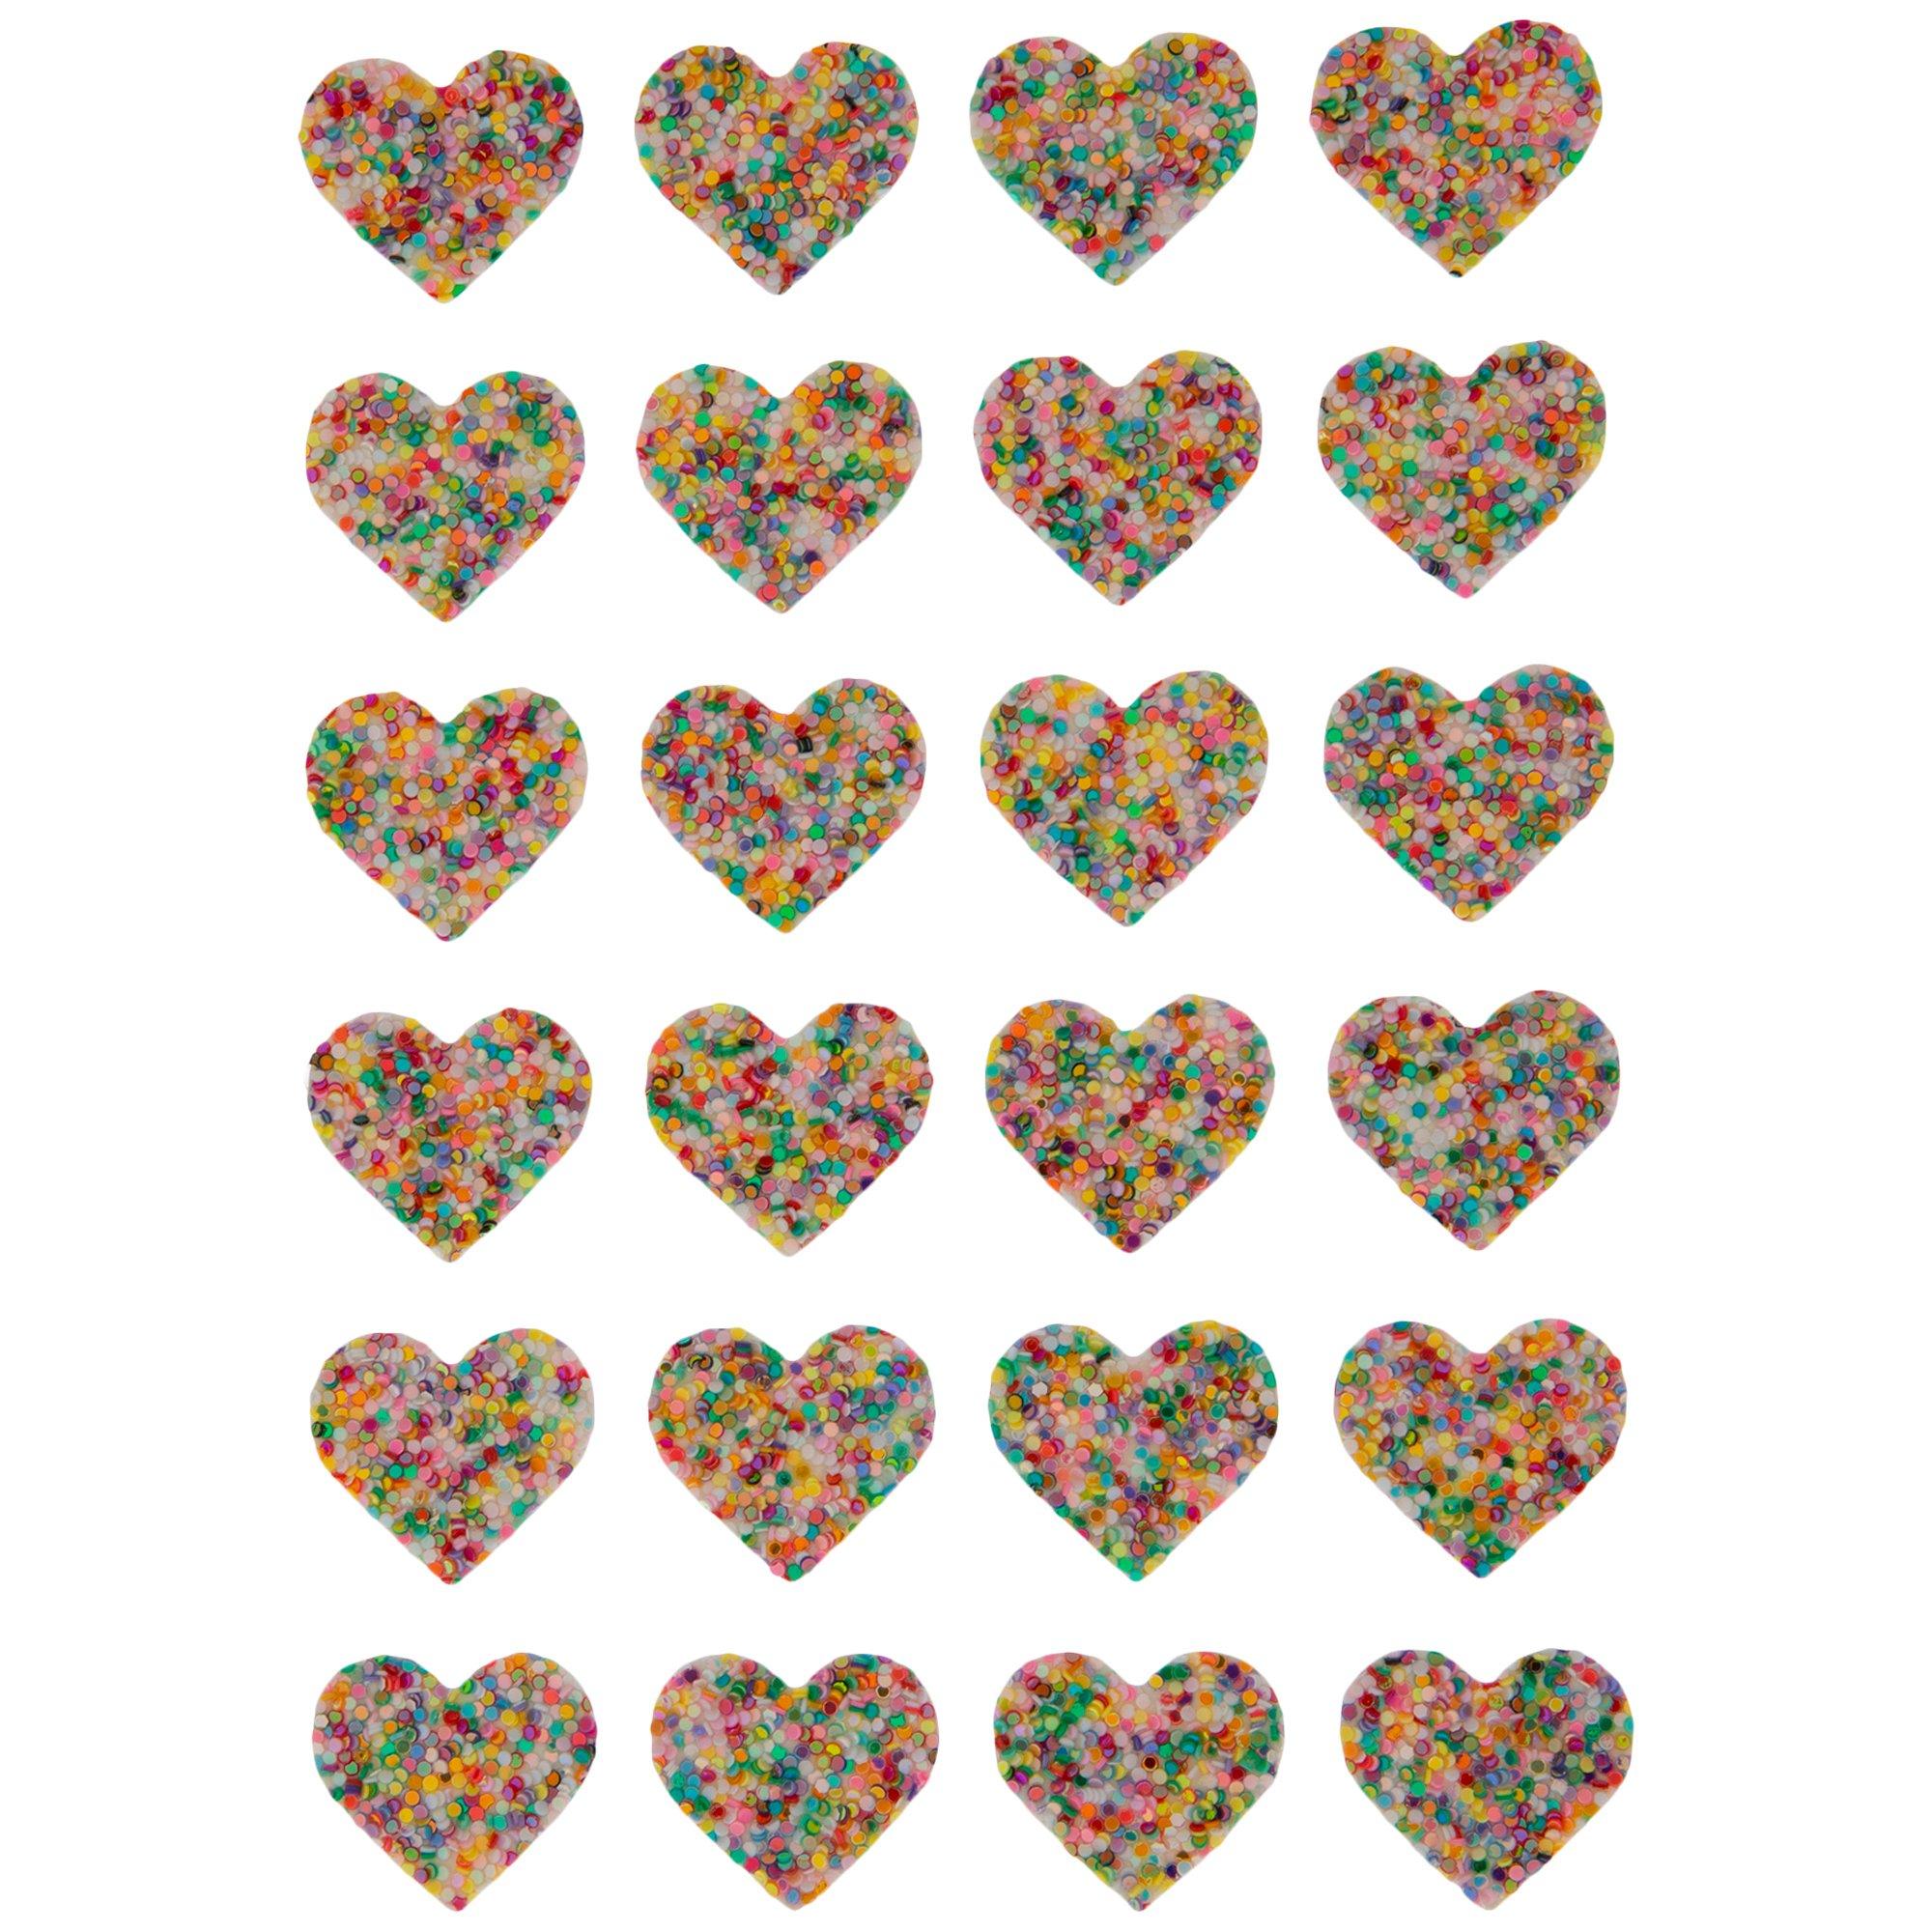 Foil & Glitter Heart Foam Stickers, Hobby Lobby